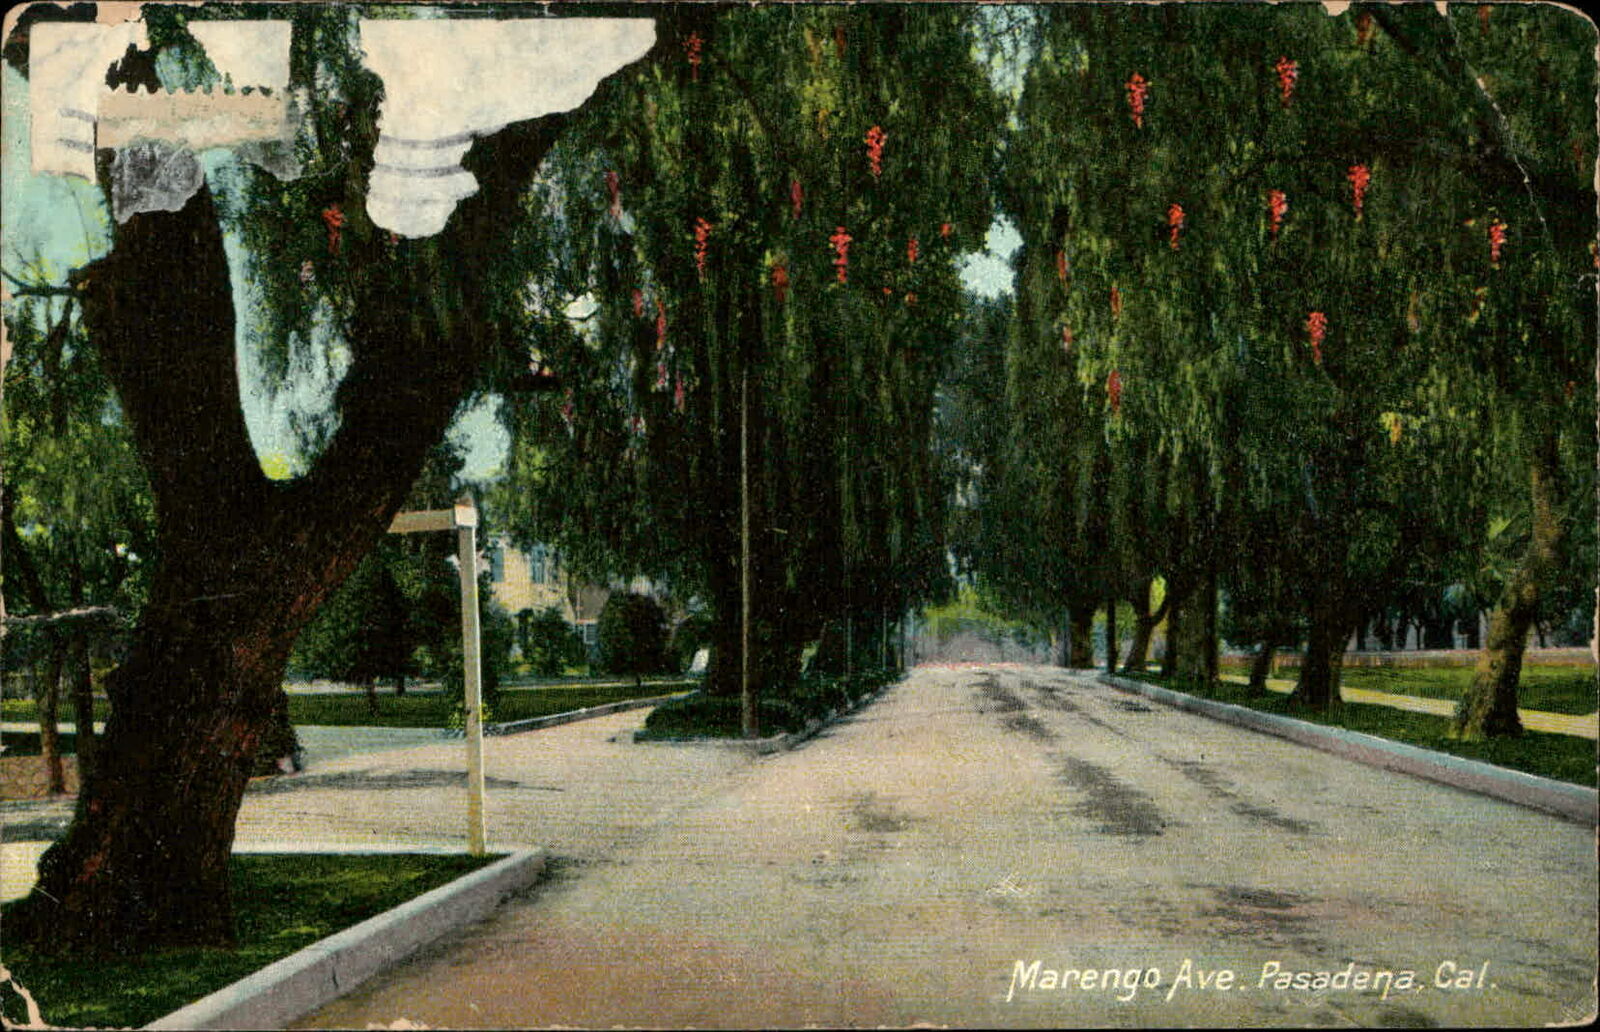 Postcard: Marengo Ave. Pasadena, Cal.